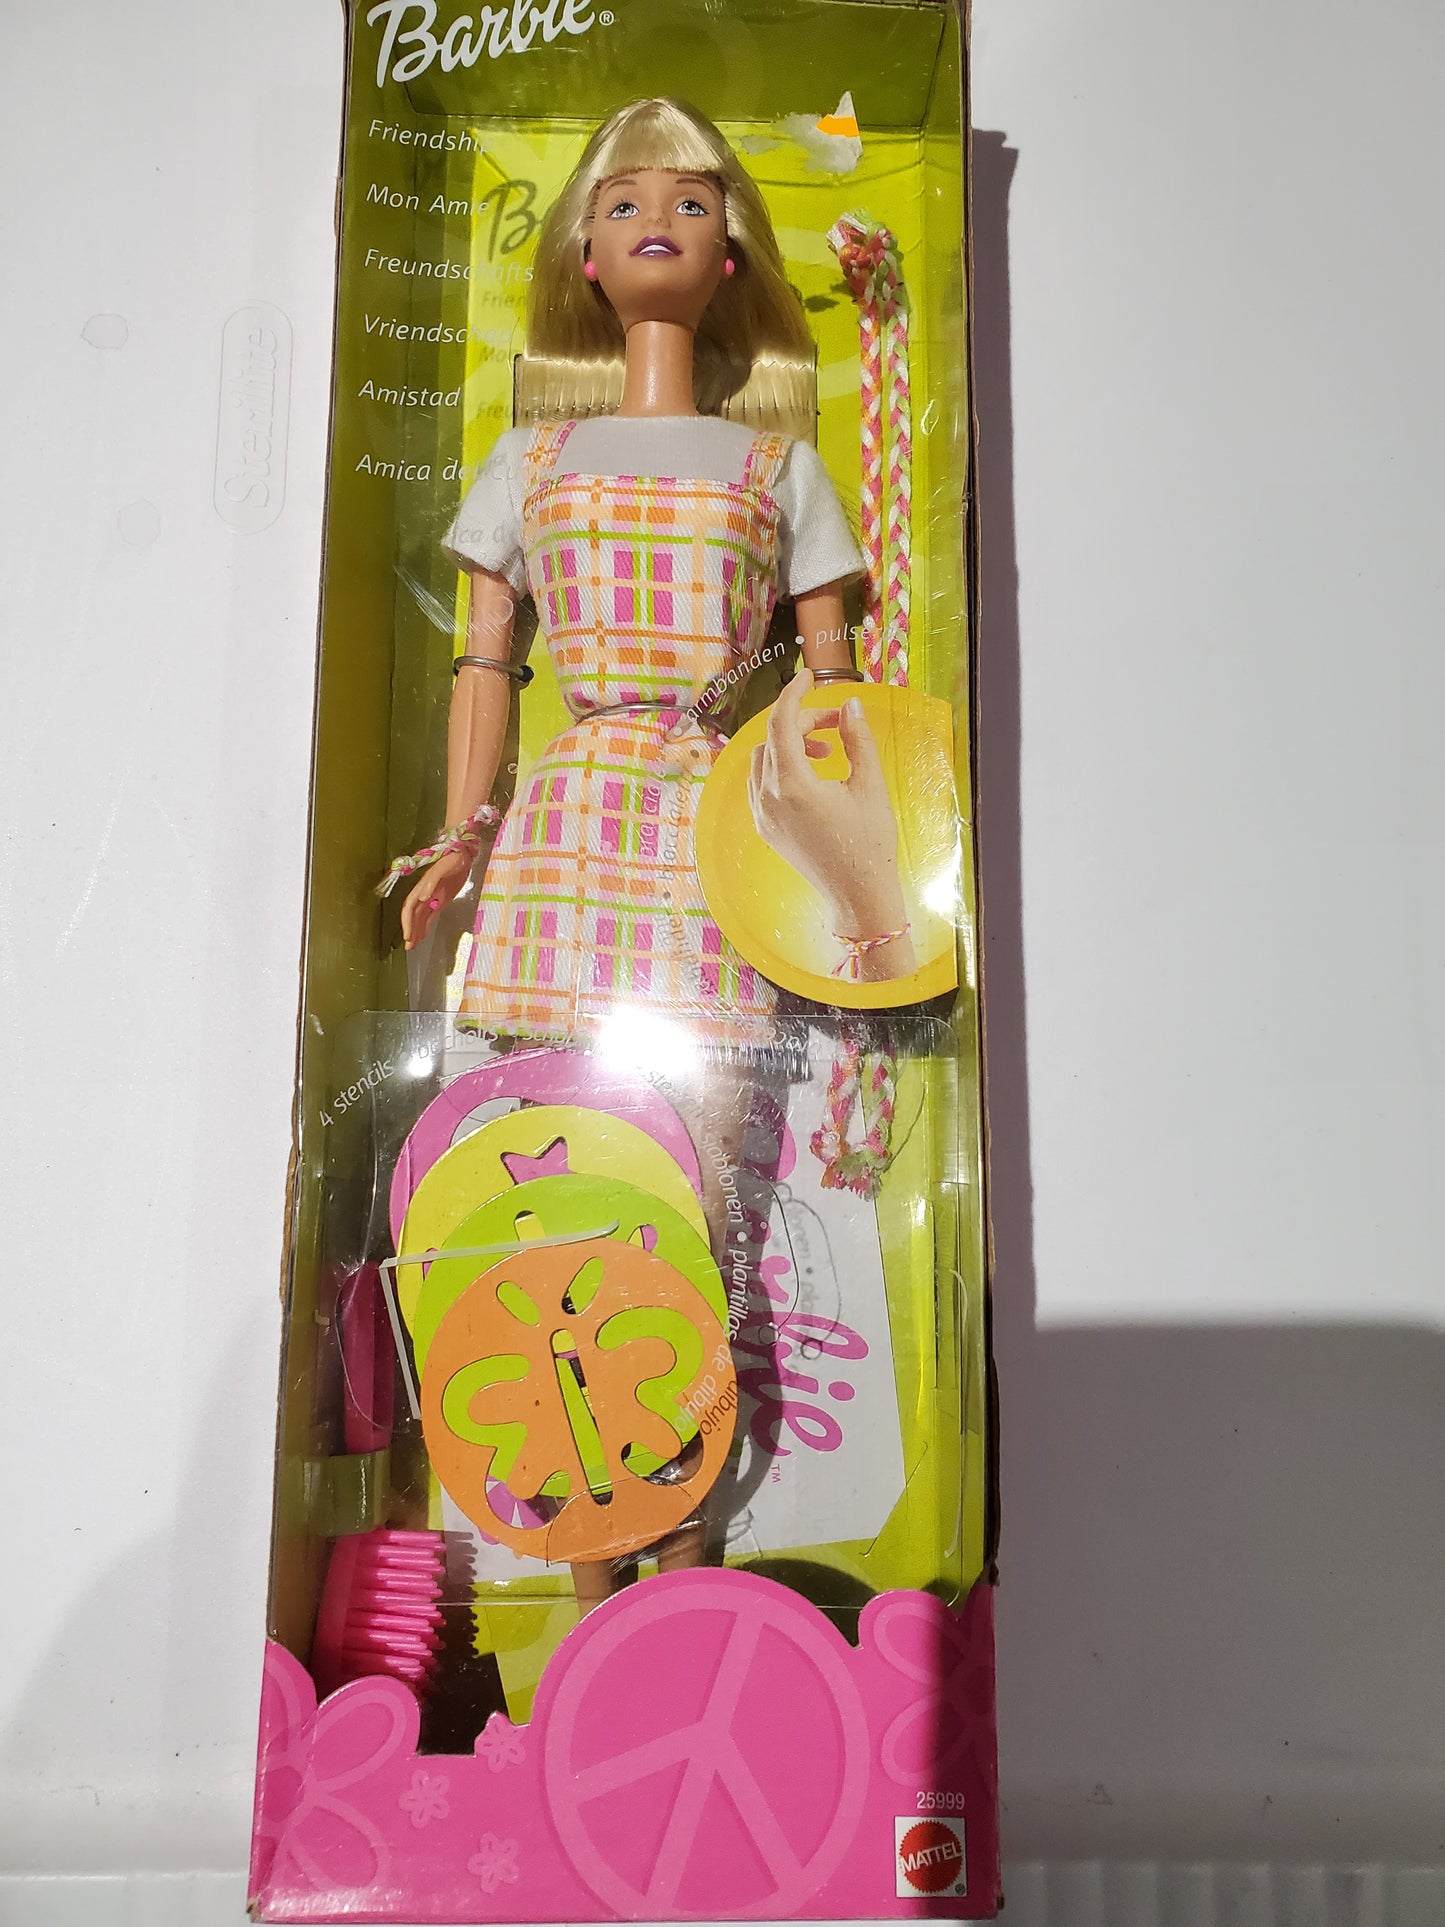 Friendship Barbie Doll Mint in Box - 1999